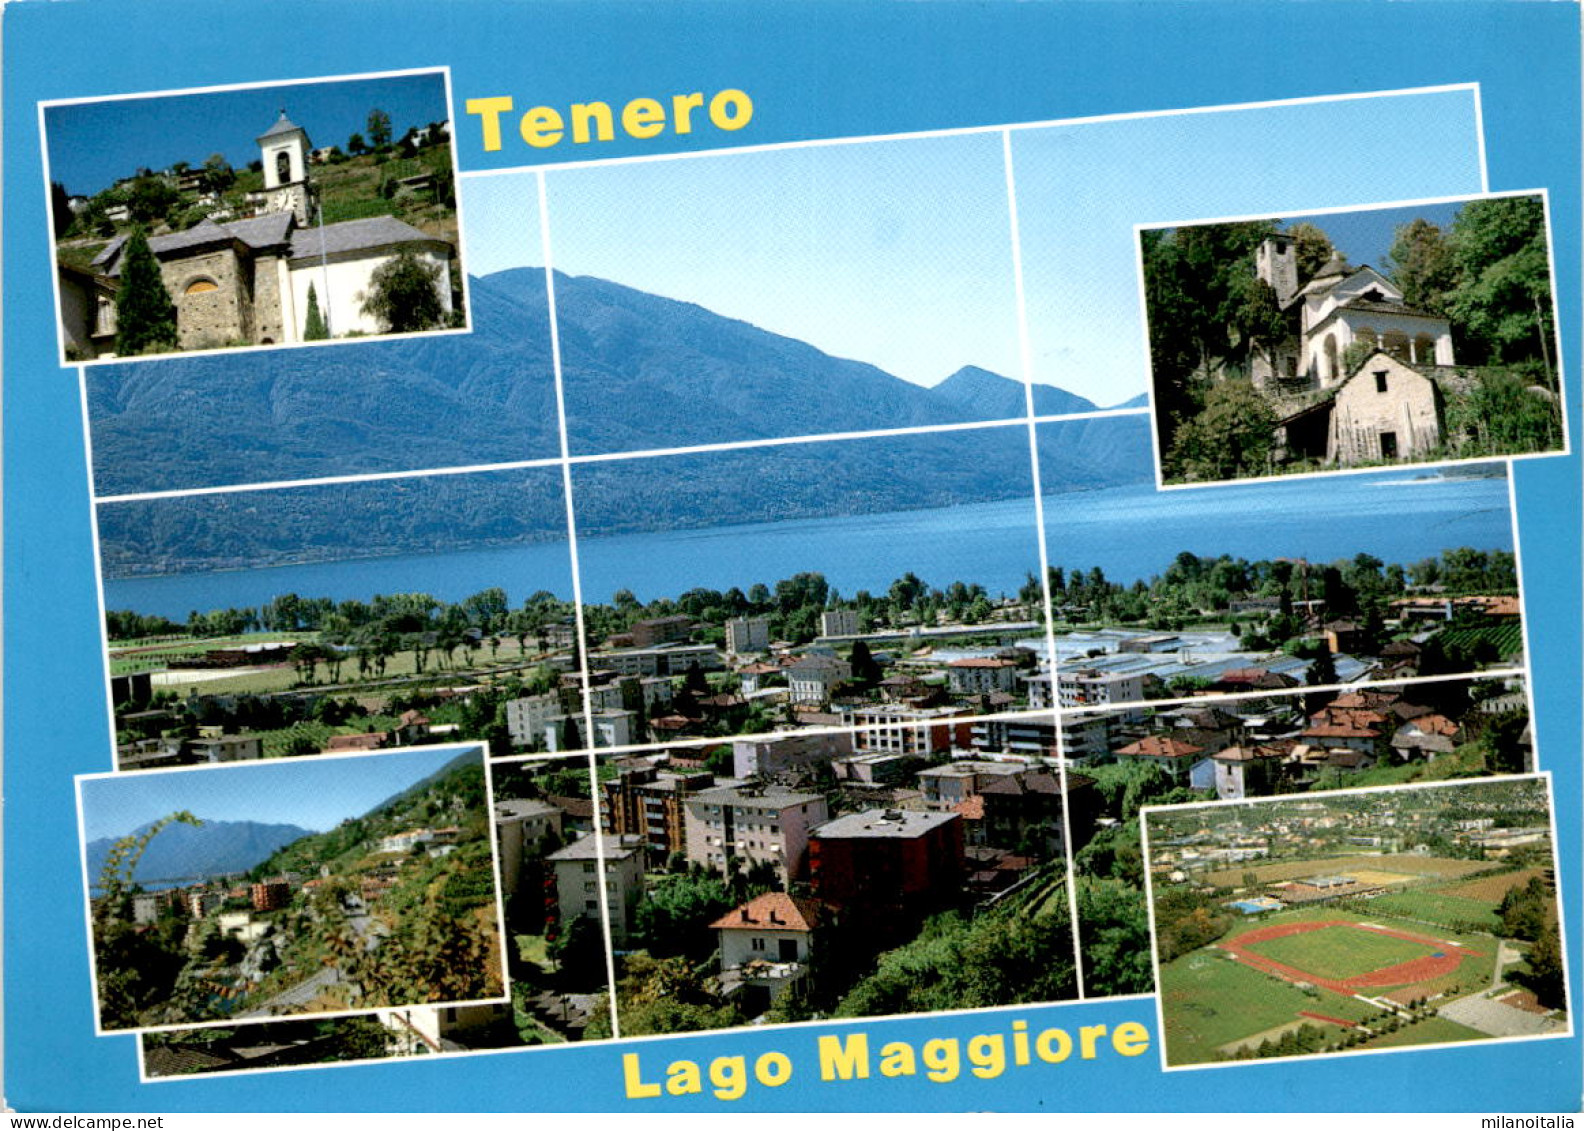 Tenero - Lago Maggiore - 5 Bilder (13503) * 23. 5. 2002 - Tenero-Contra